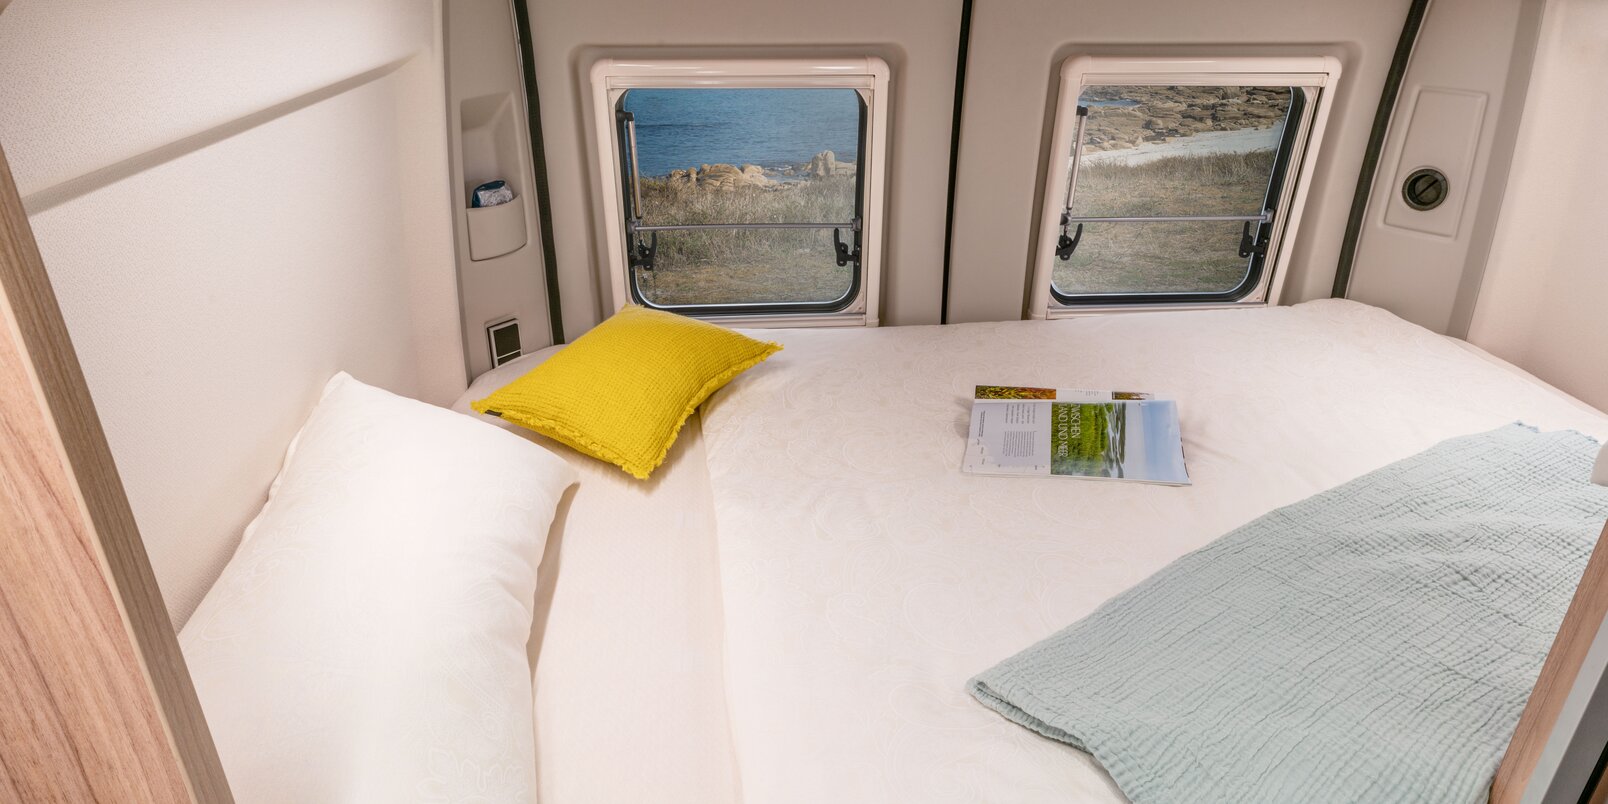 Zona notte nella parte posteriore del Camper Van HYMER: lenzuola bianche, cuscino giallo, coperta, rivista; finestra posteriore 